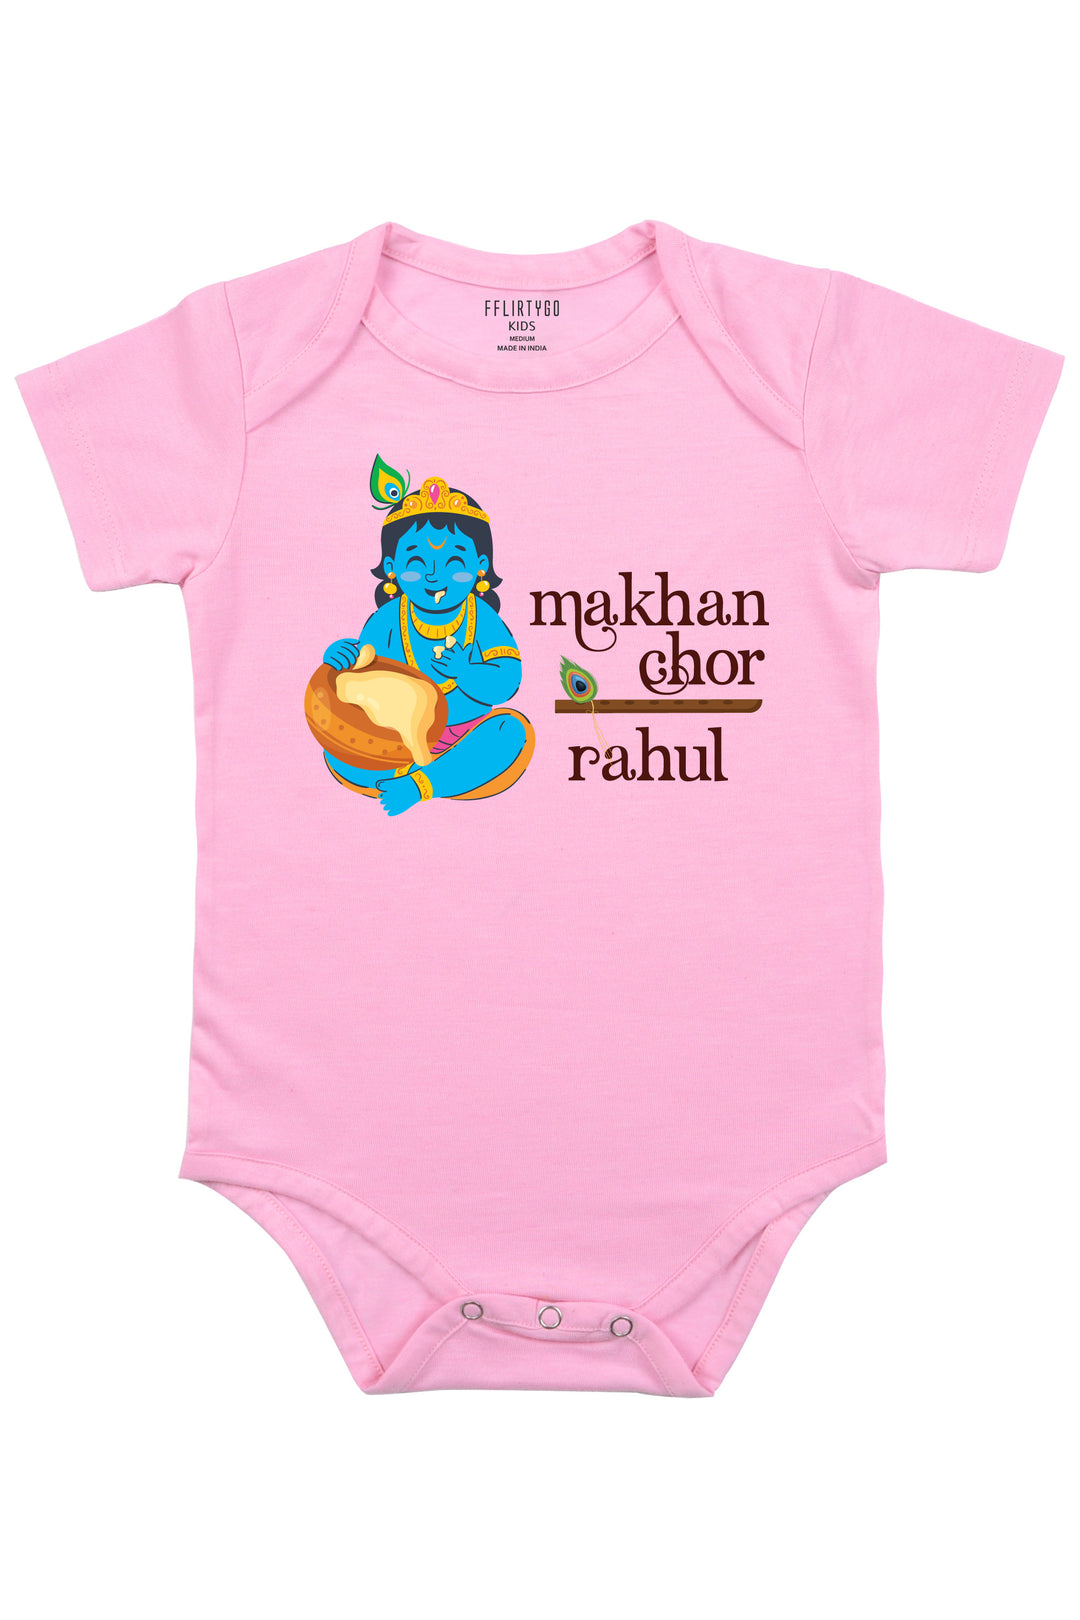 Makhan Chor Nand Kishore Baby Romper | Onesies w/ Custom Name